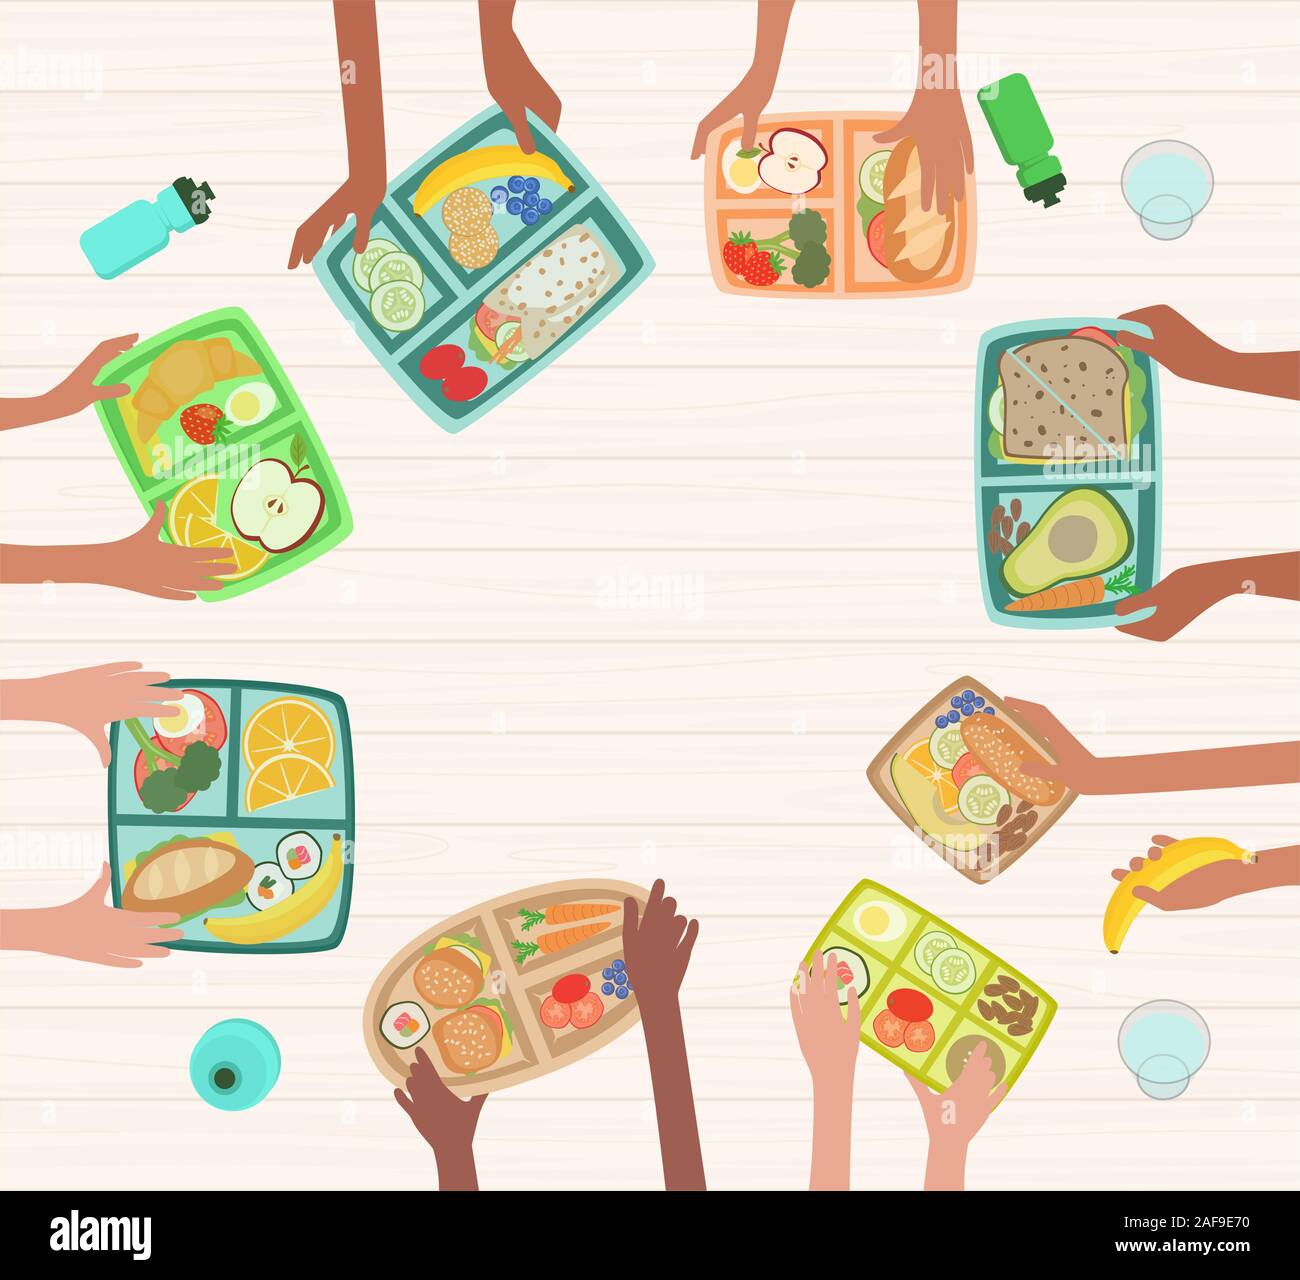 Kinder Hände halten Lunchboxen auf Tabelle mit gesundes Mittagessen Ernährung in der Schule Konzept mit lunchboxes Stock Vektor